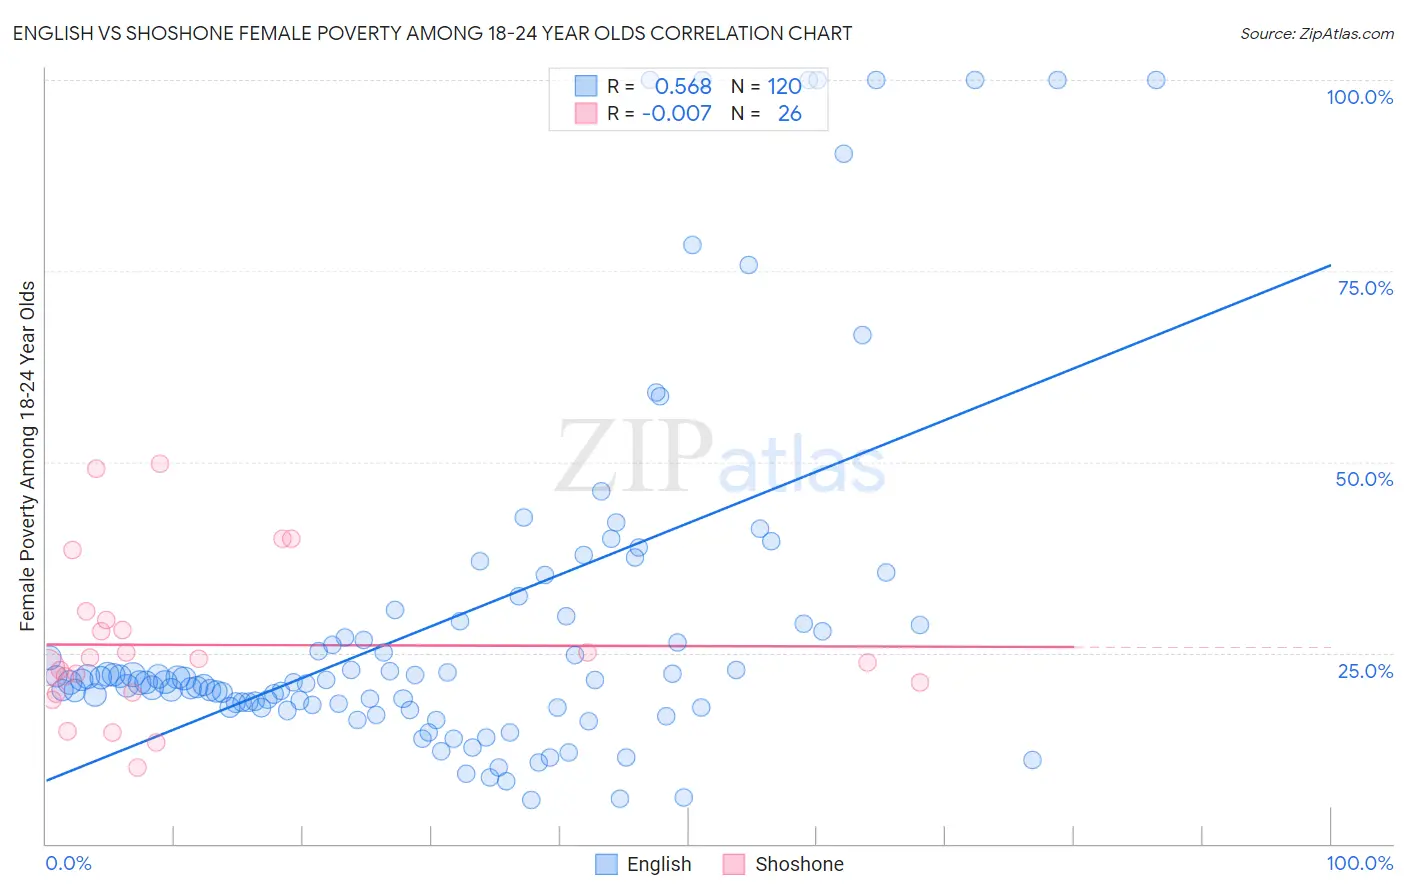 English vs Shoshone Female Poverty Among 18-24 Year Olds